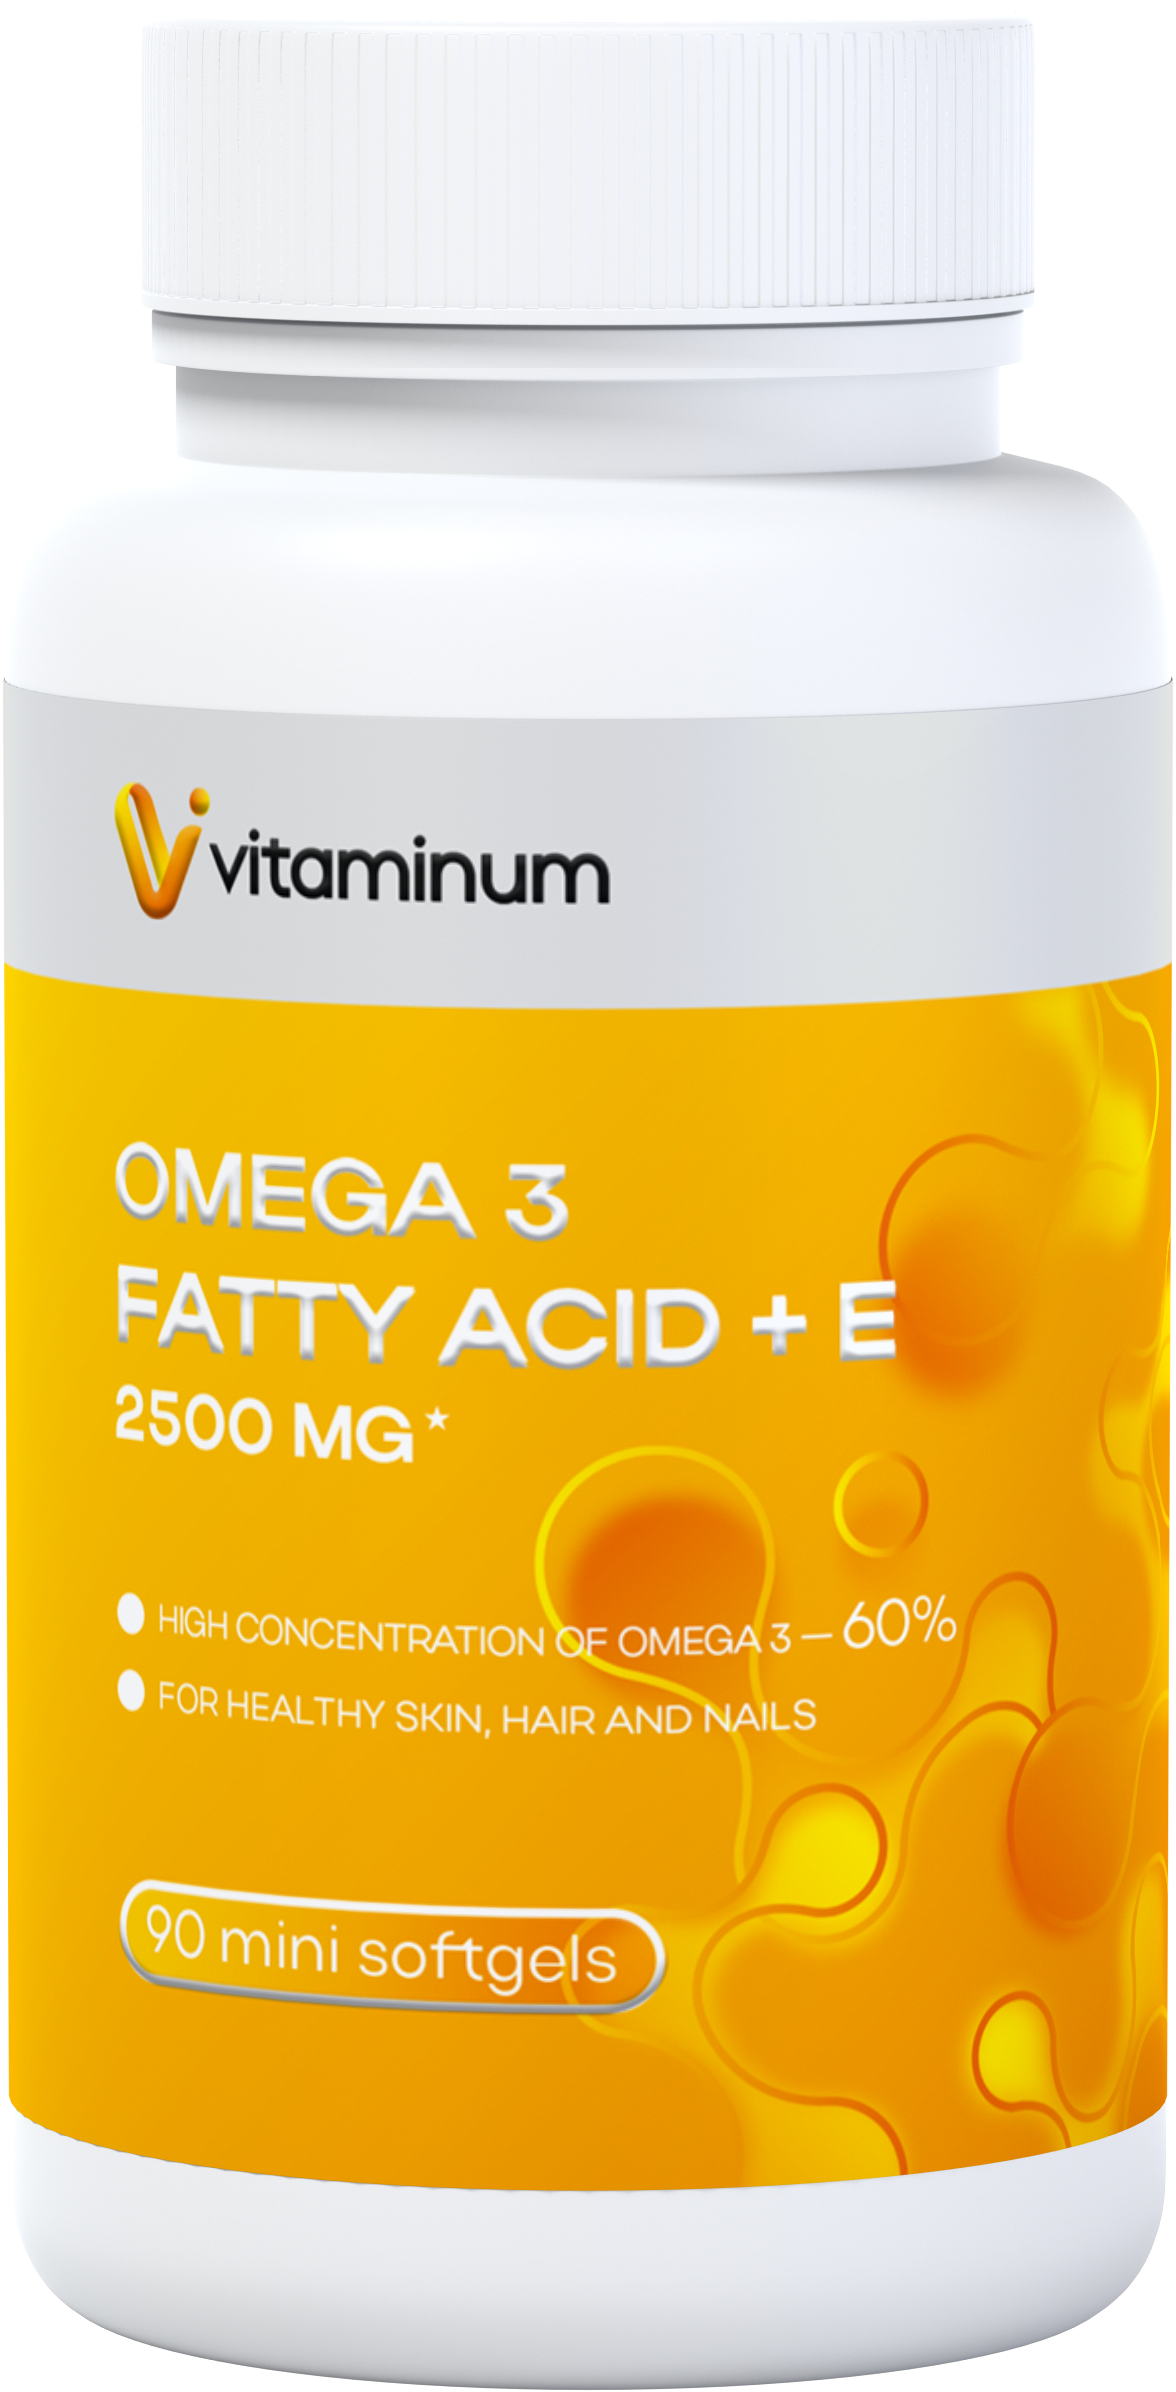  Vitaminum ОМЕГА 3 60% + витамин Е (2500 MG*) 90 капсул 700 мг   в Кемерове